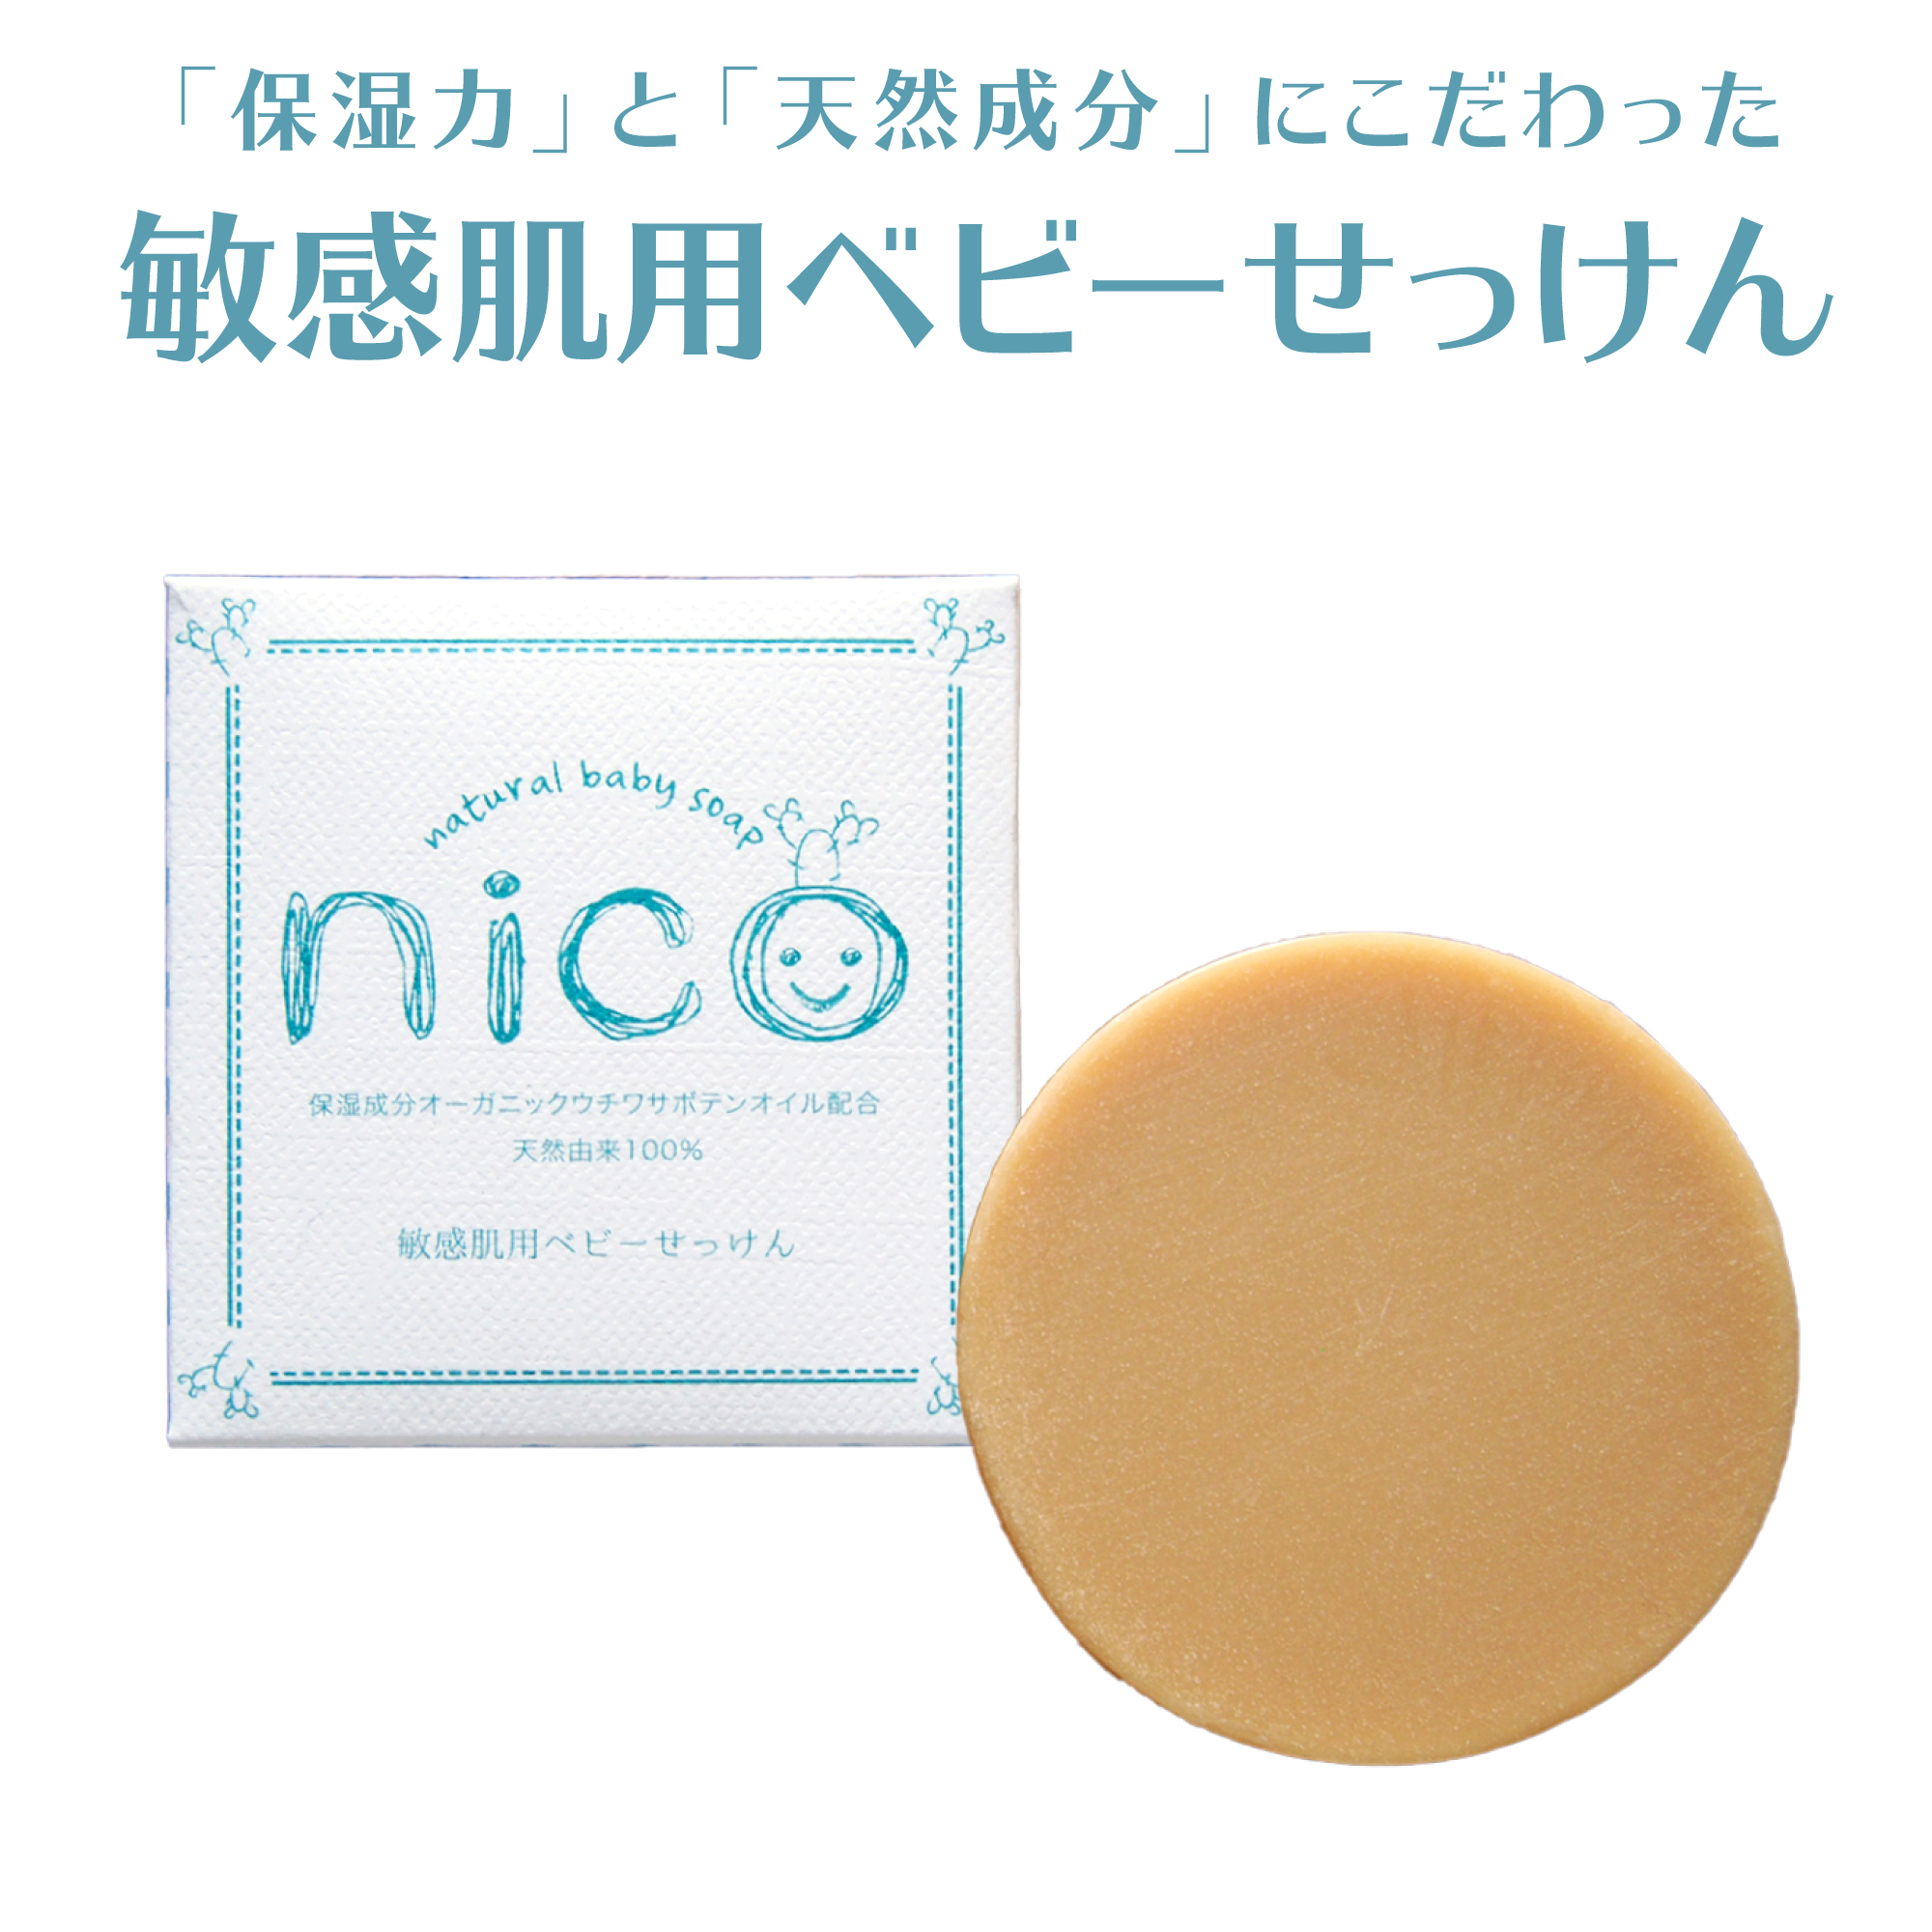 nico石鹸 にこせっけん 50g 敏感肌用 ベビーソープ【公式】